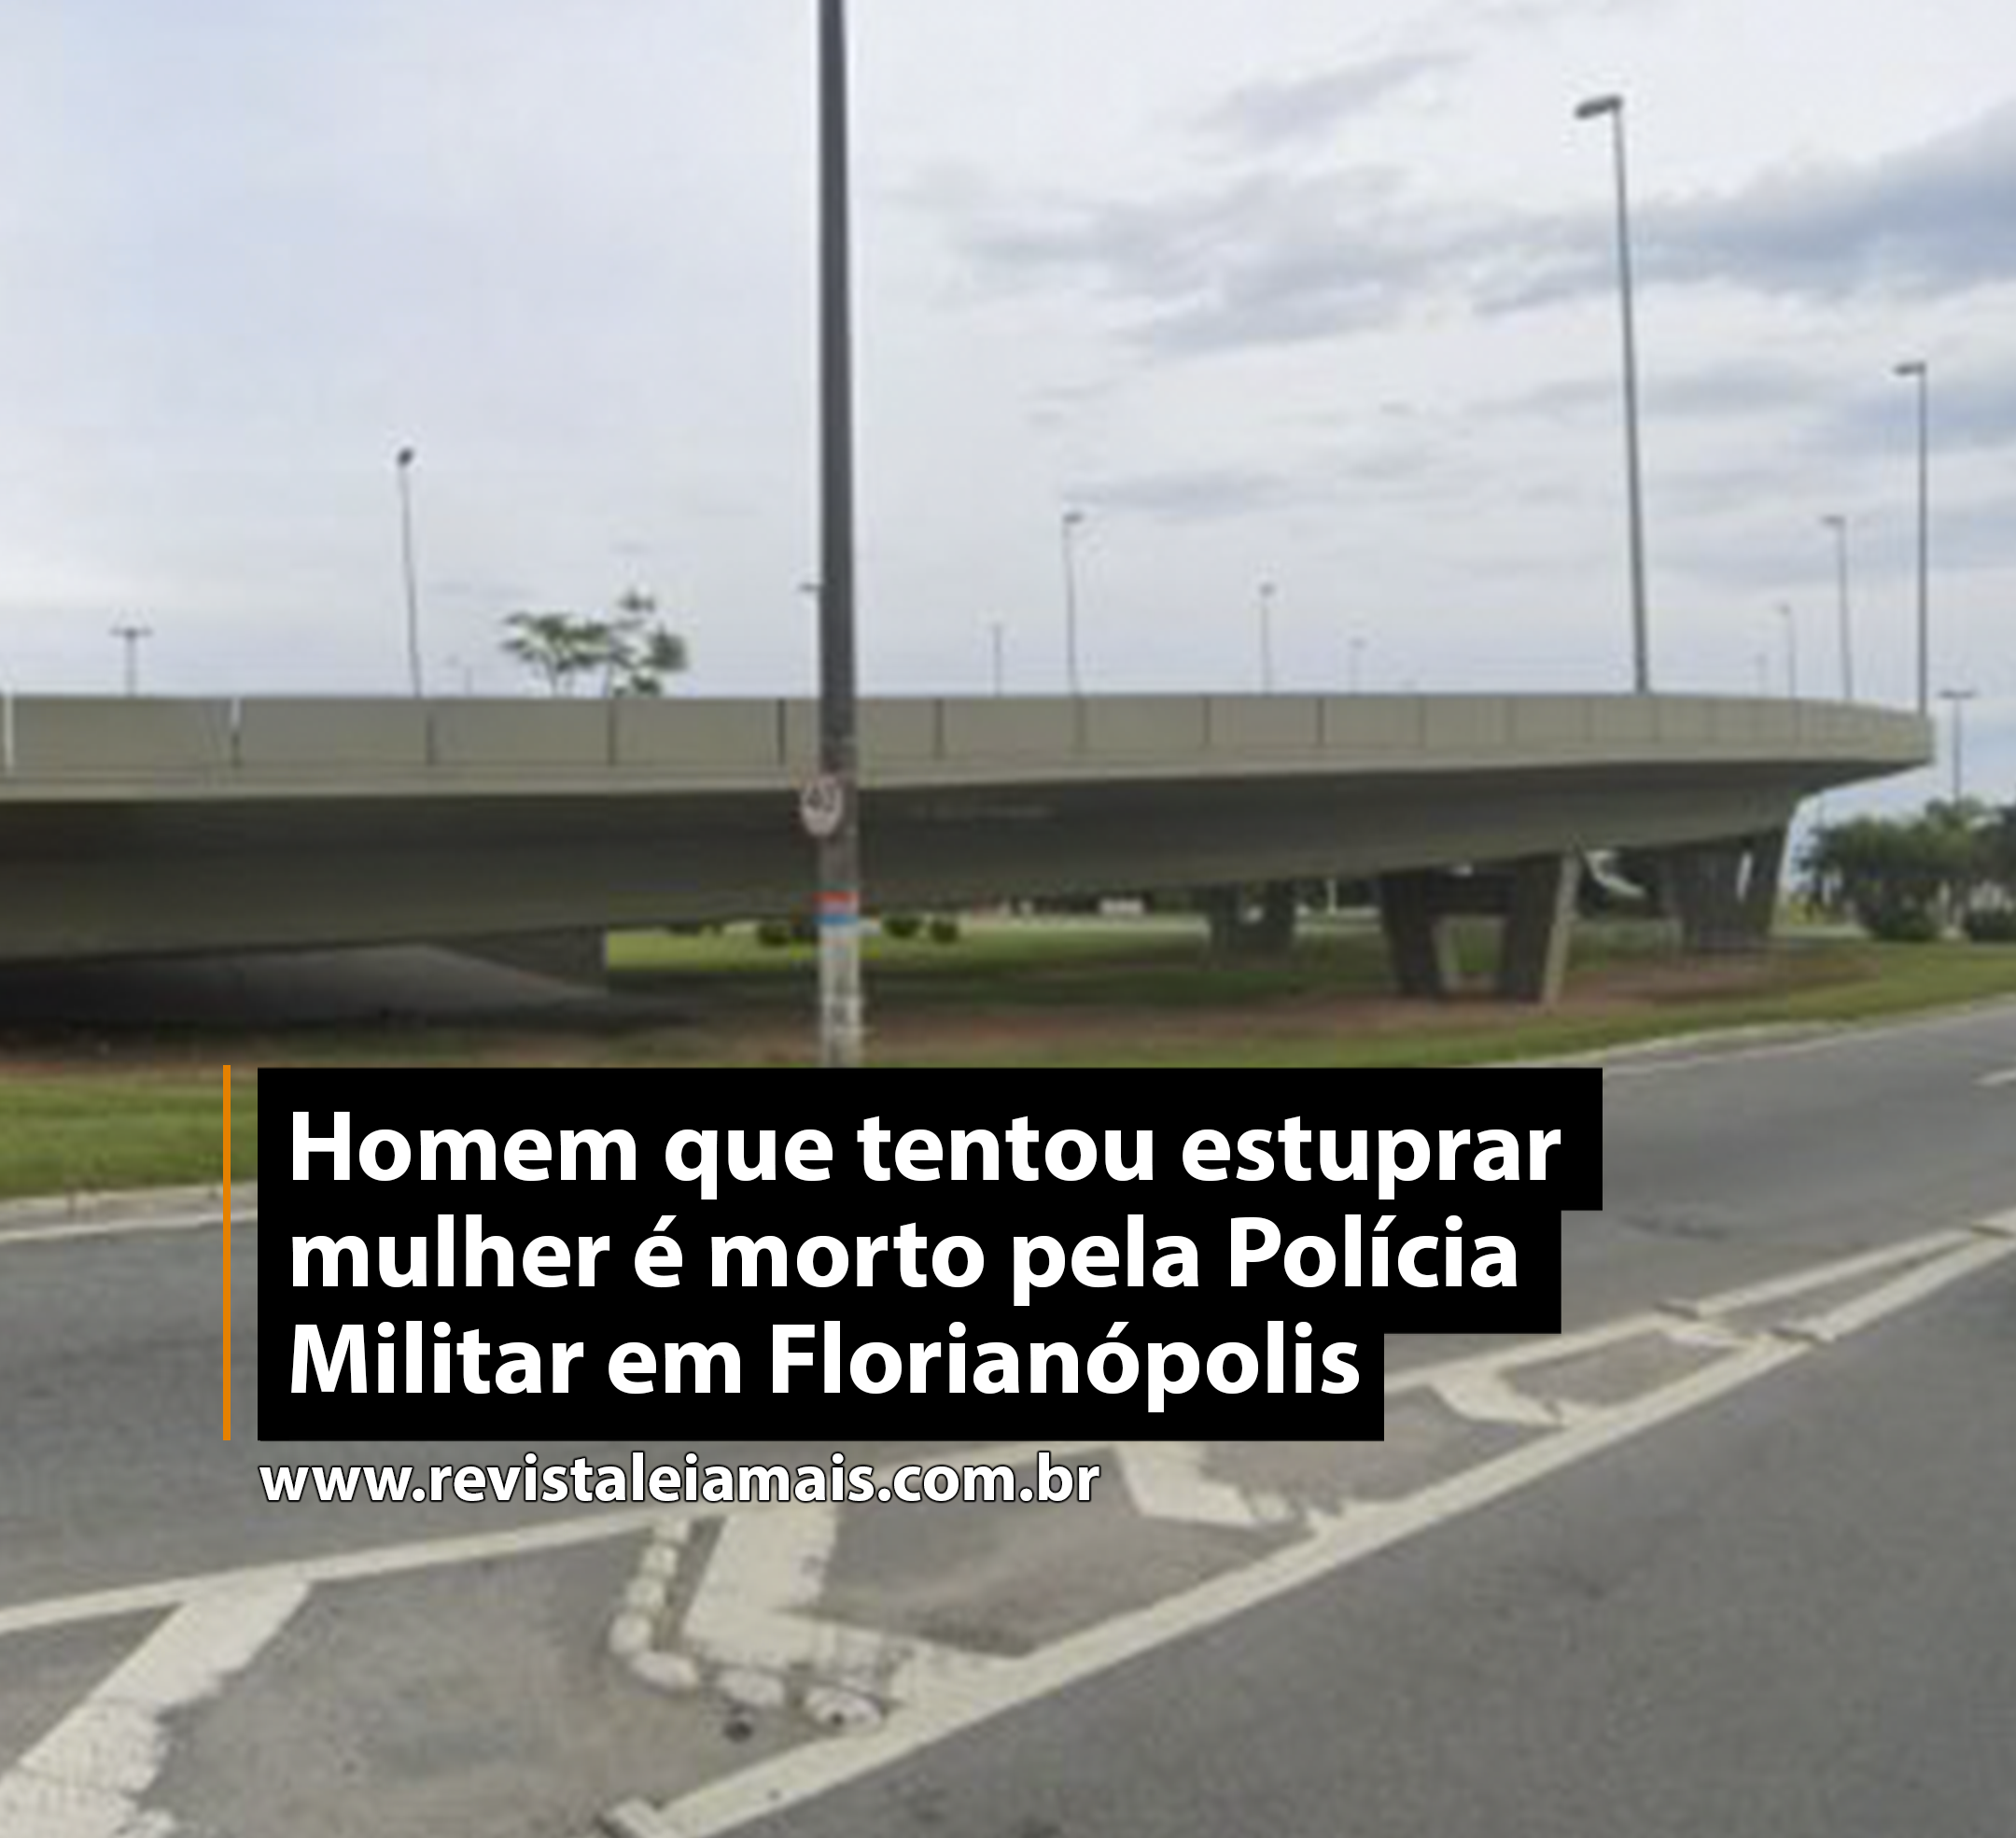 Homem que tentou estuprar mulher é morto pela Polícia Militar em Florianópolis